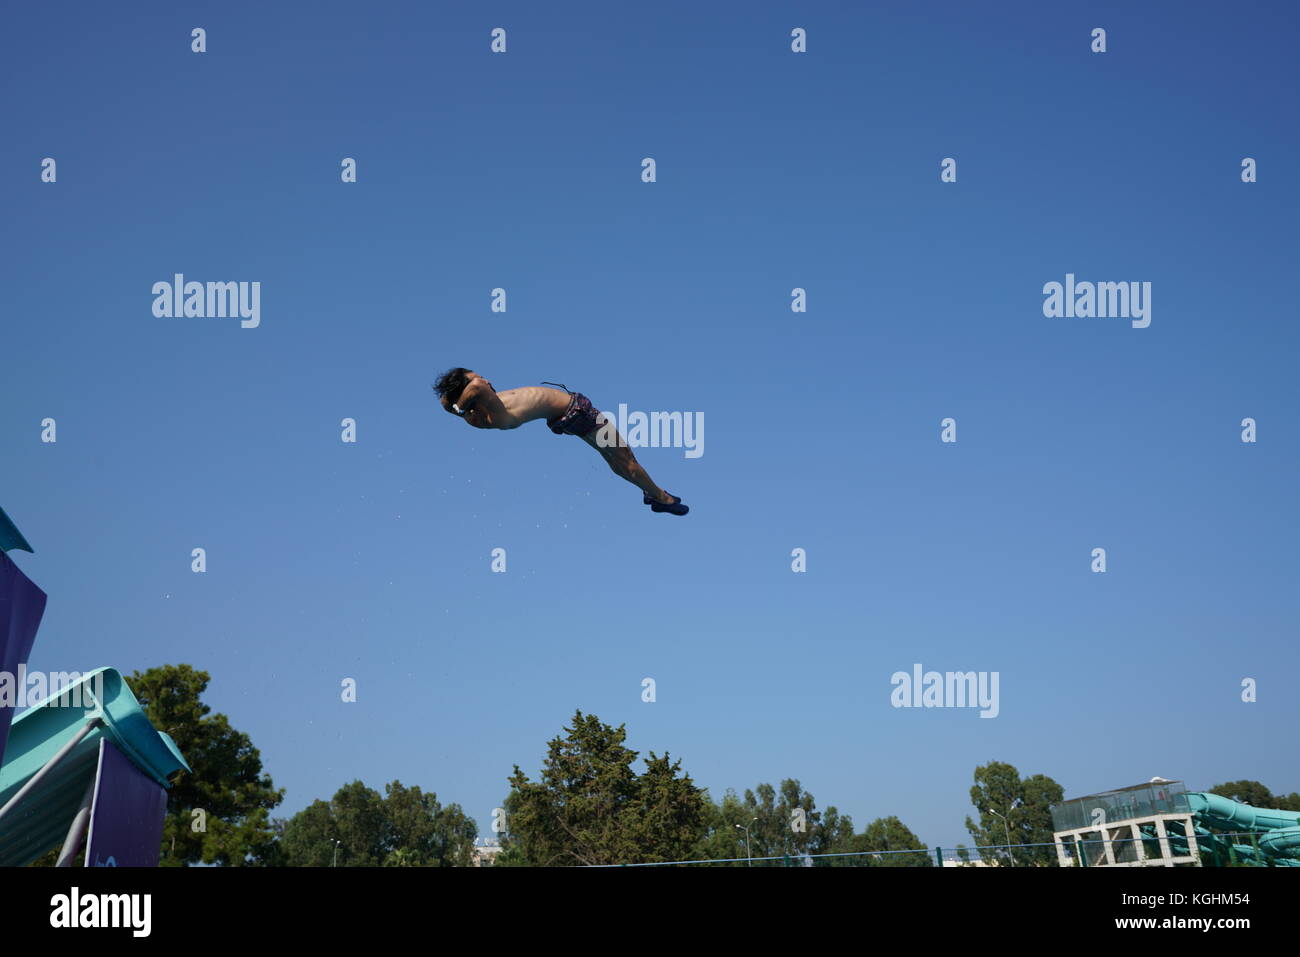 Alta buceo: saltar en el aire y volar en traje de baño Foto de stock